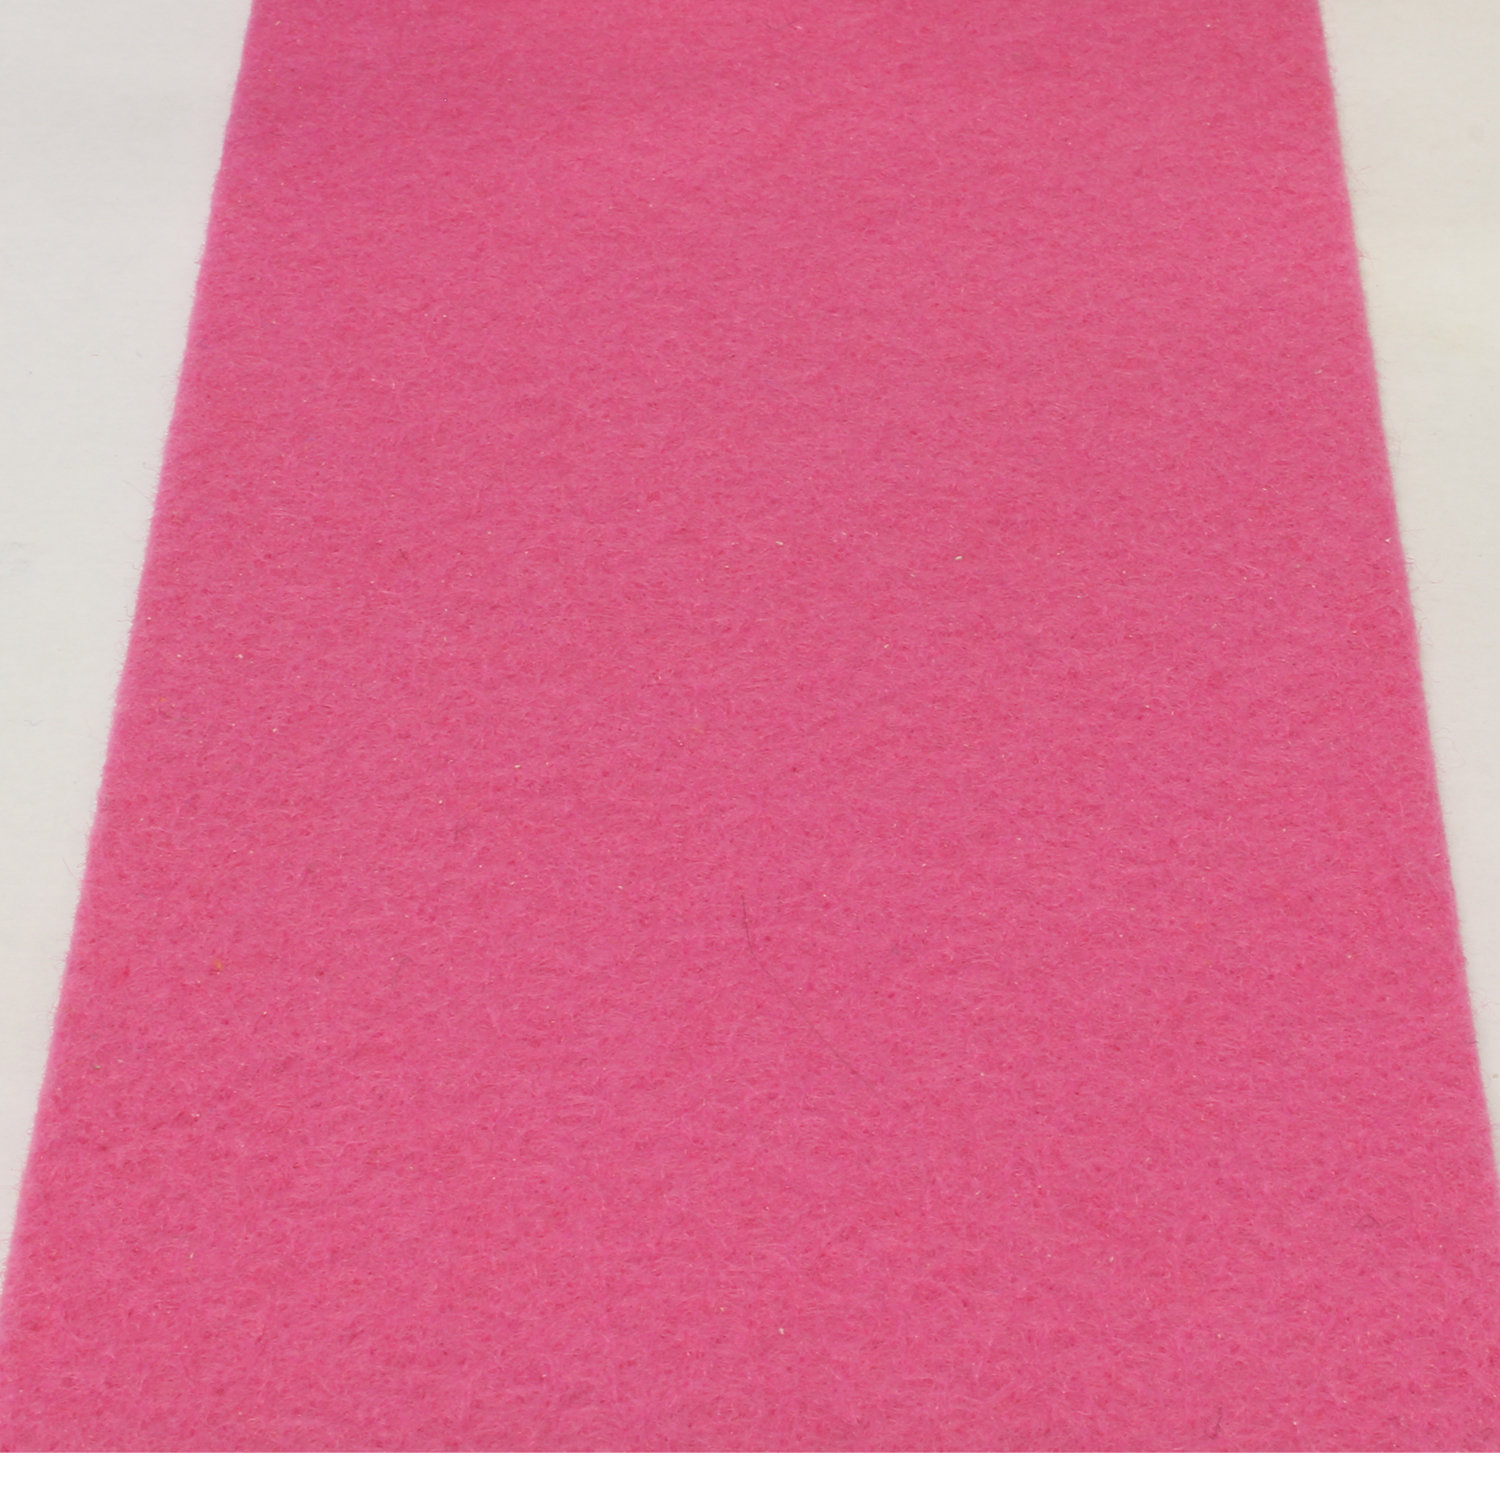 vice versa telefoon Meerdere Roze loper 1 meter breed met verstevigde rug | Blueflower.nl